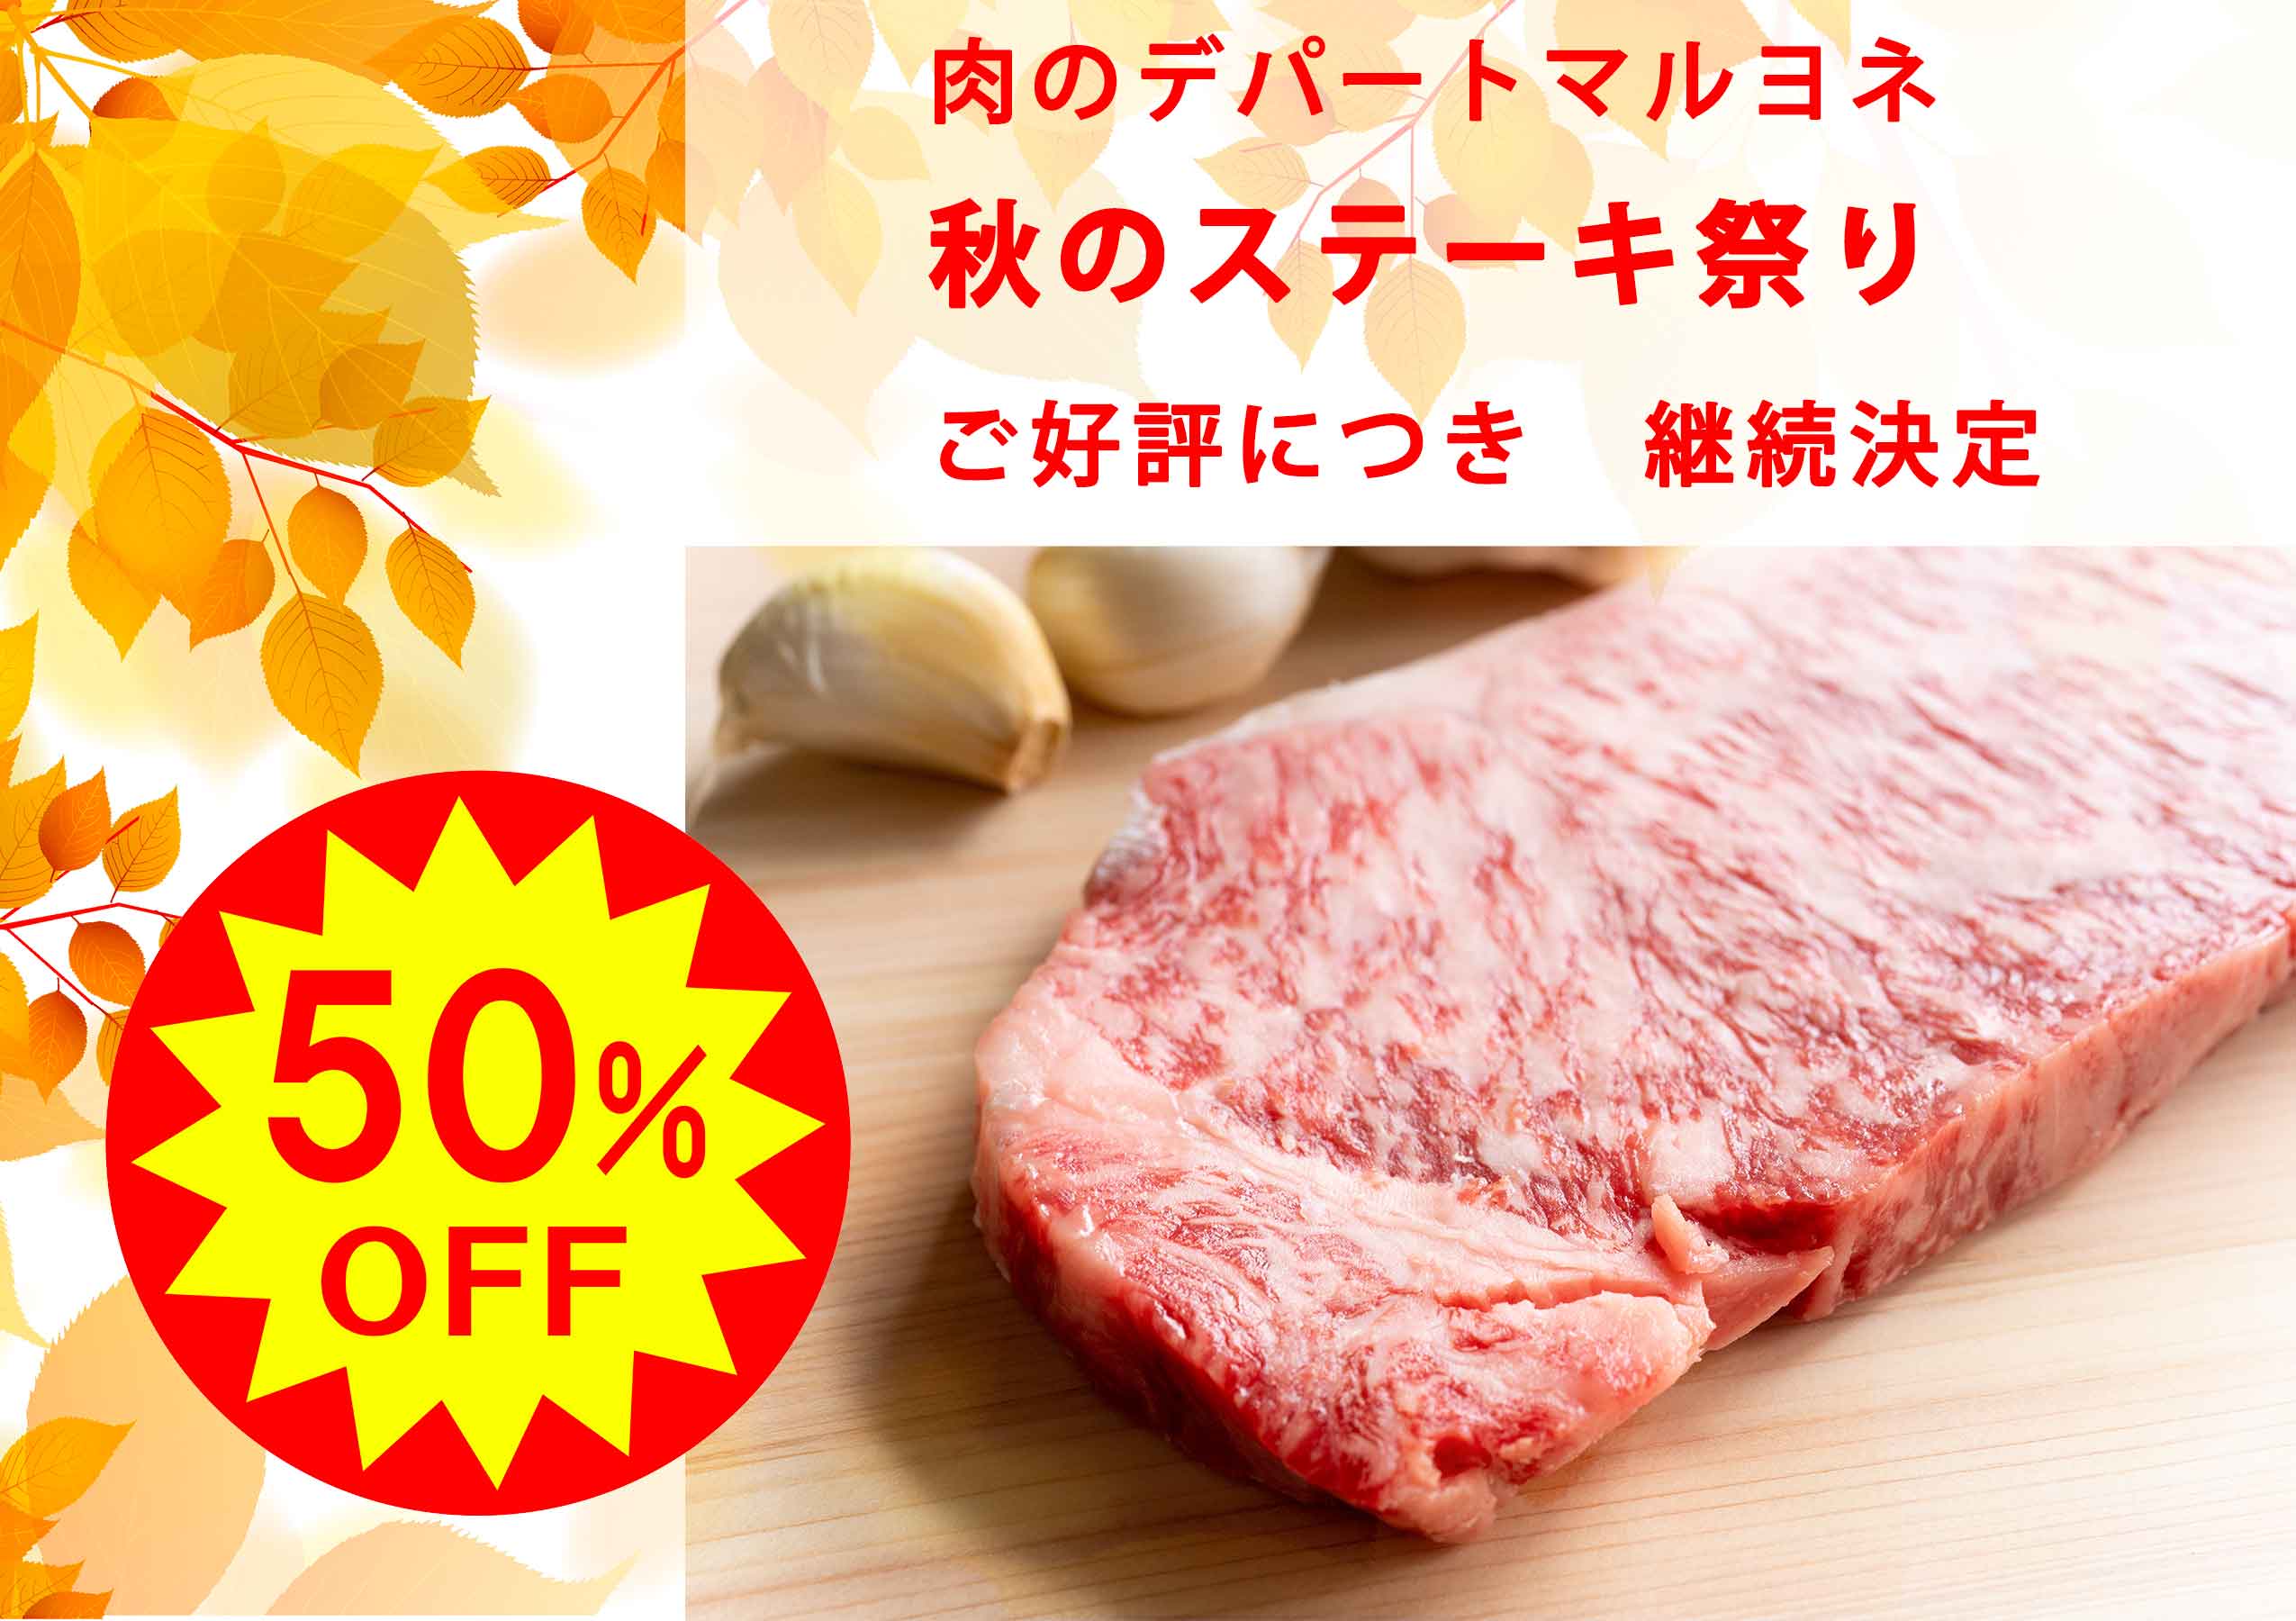 「秋のステーキ祭り開催中」神戸ビーフサーロインステーキ　100g　通常　3,000円→1,500円